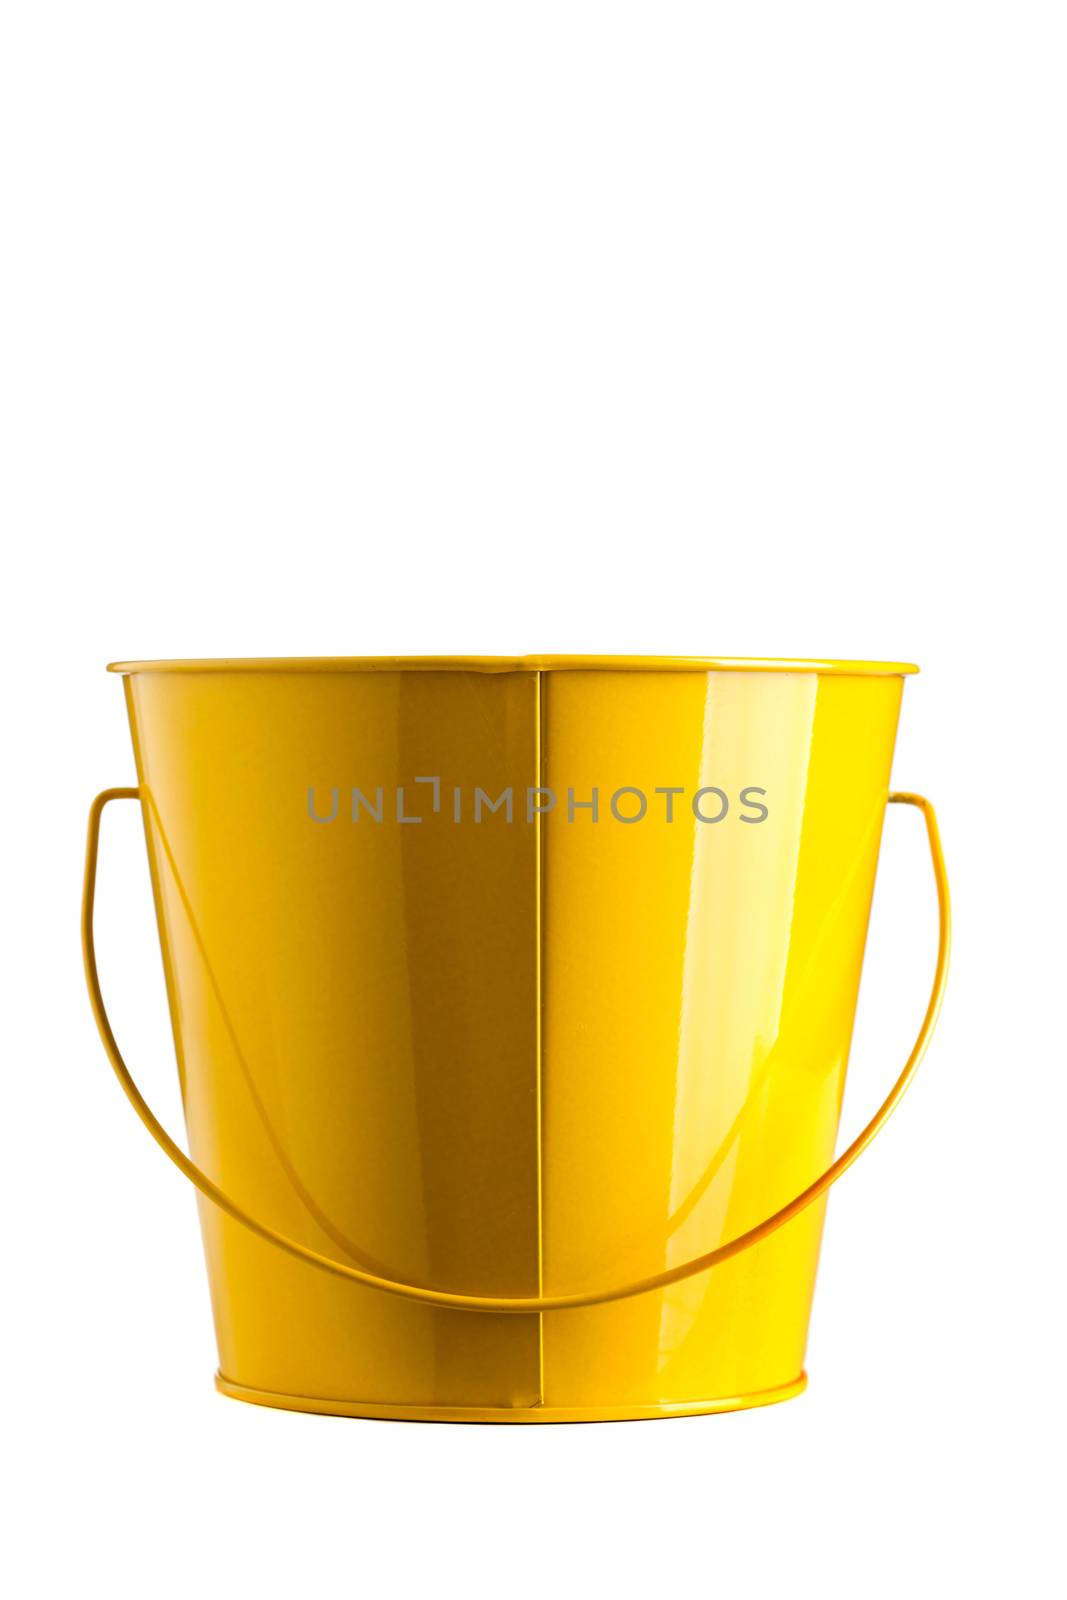 yellow bucket by kokimk